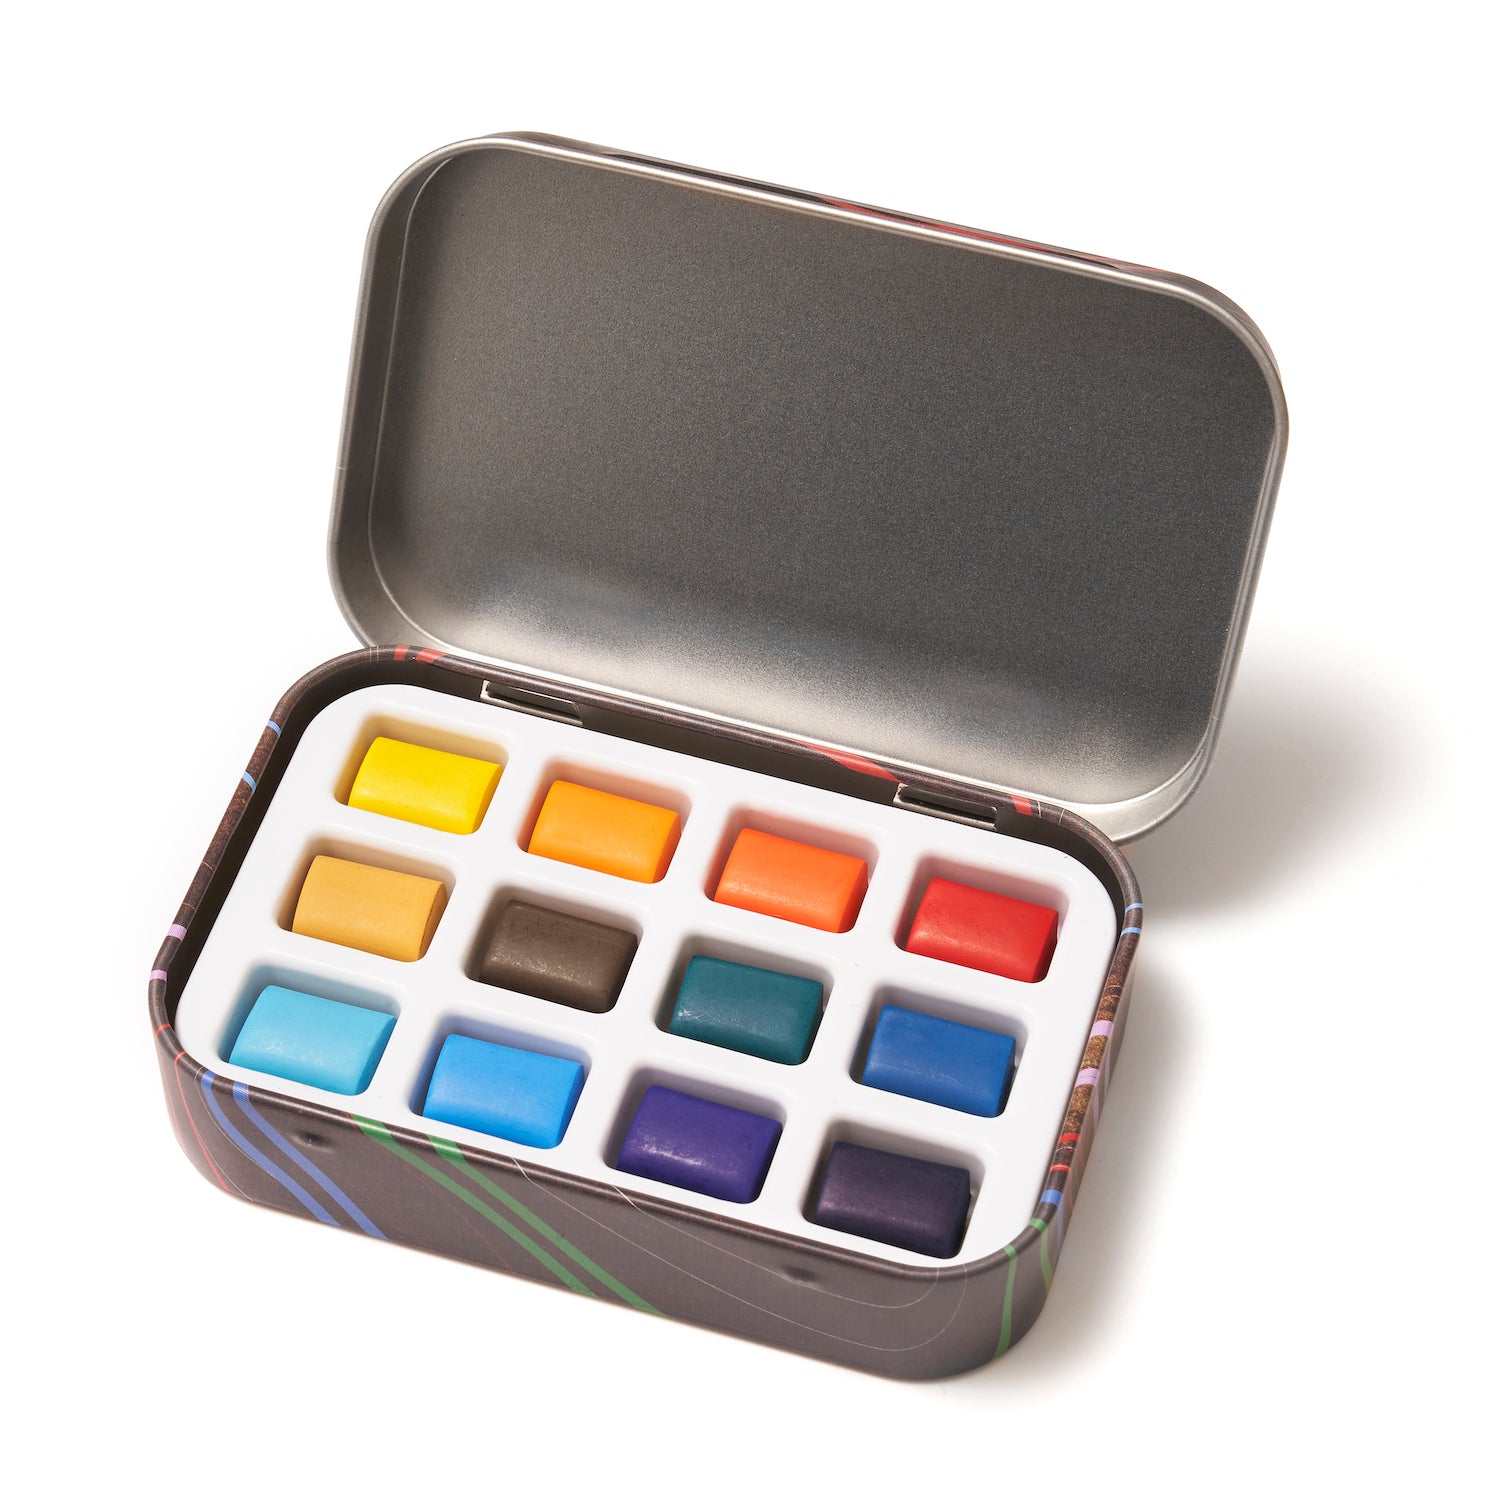 Essential Watercolor Paint Set (12 Colors)